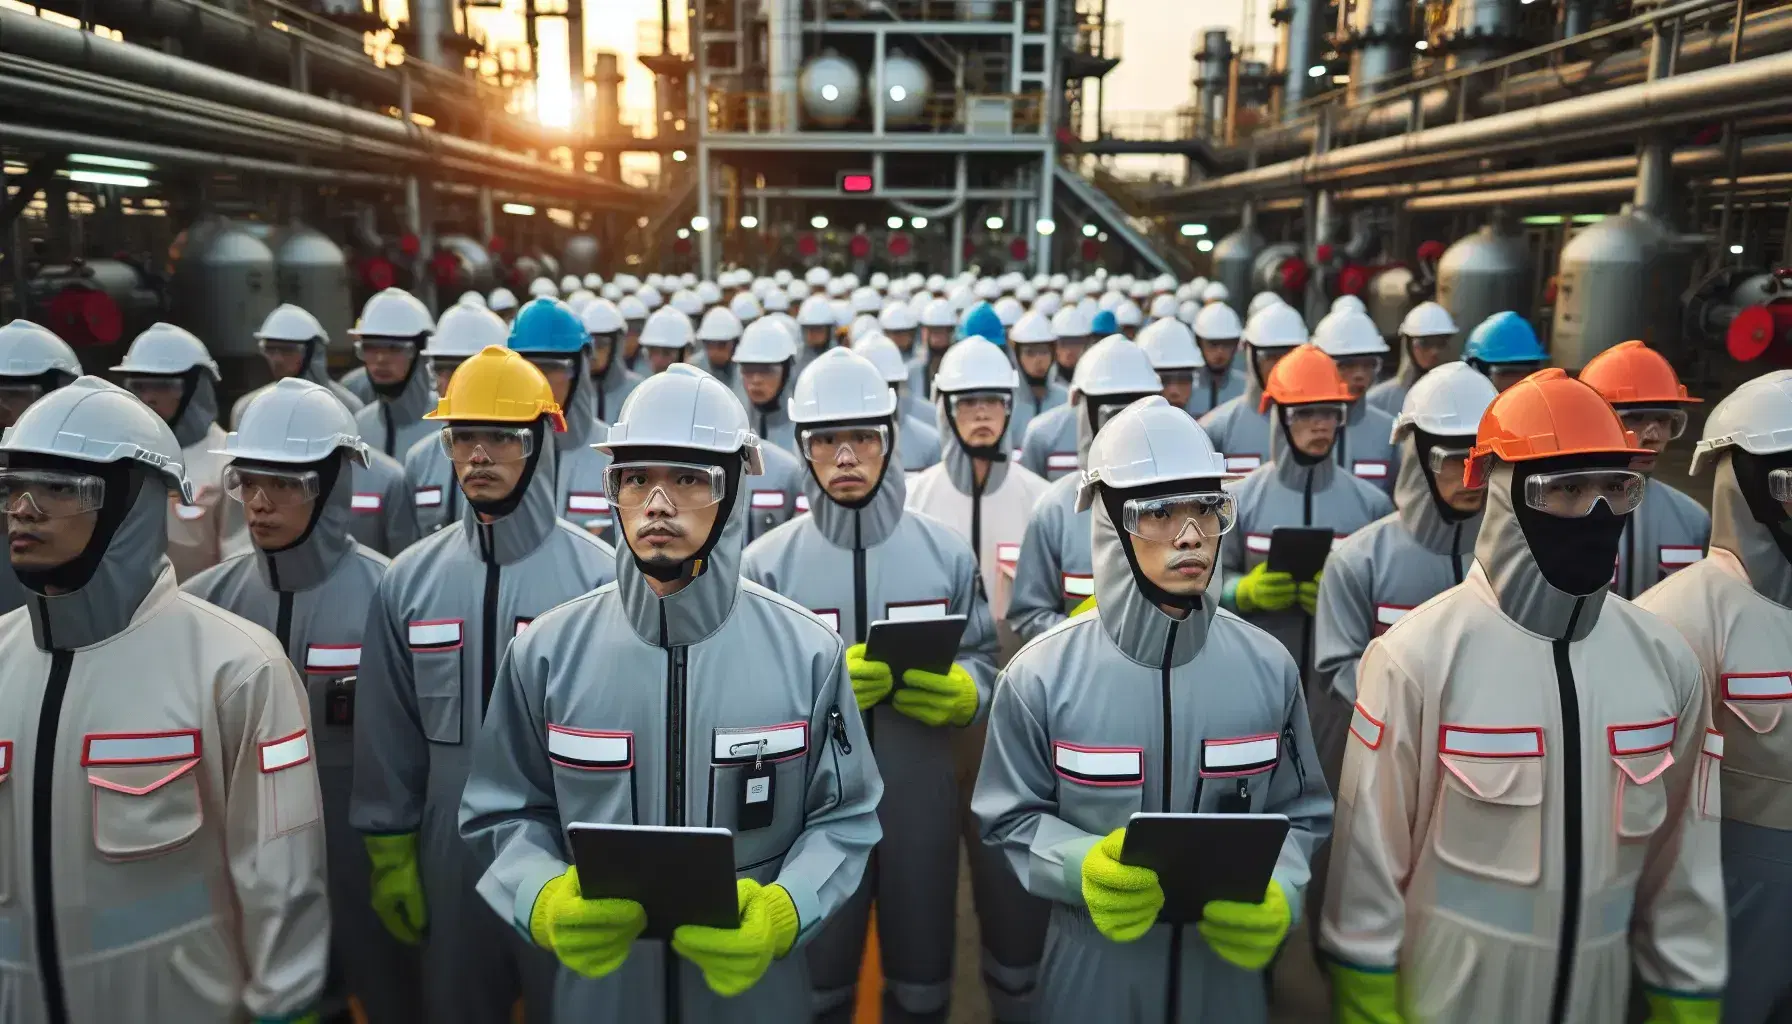 Grupo de profesionales en equipo de seguridad industrial observando maquinaria, con cascos y gafas de protección, sosteniendo tablets en un entorno con tuberías.